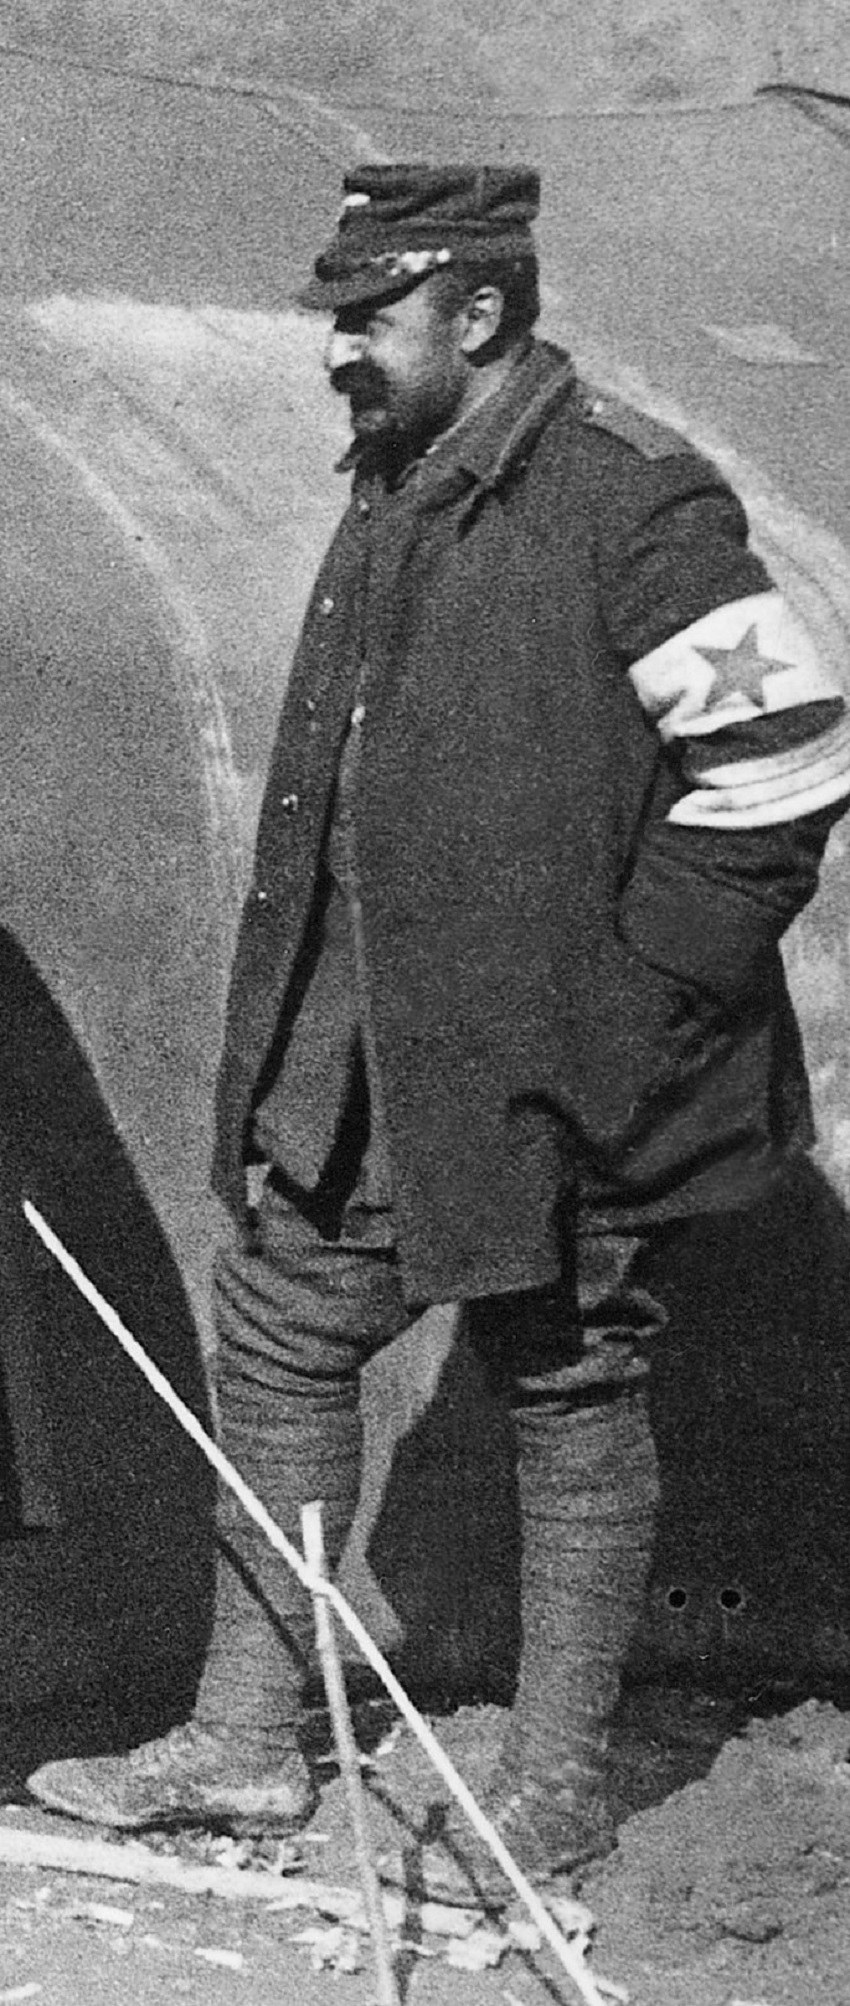 Ο Μιλτιάδης Νεγρεπόντης, ως επιλοχίας των αυτοκινήτων του Ελληνικού Στρατού, κατά τη διάρκεια των Βαλκανικών Πολέμων, εθελοντής όμως αν και ήταν βουλευτής Αττικοβοιωτίας